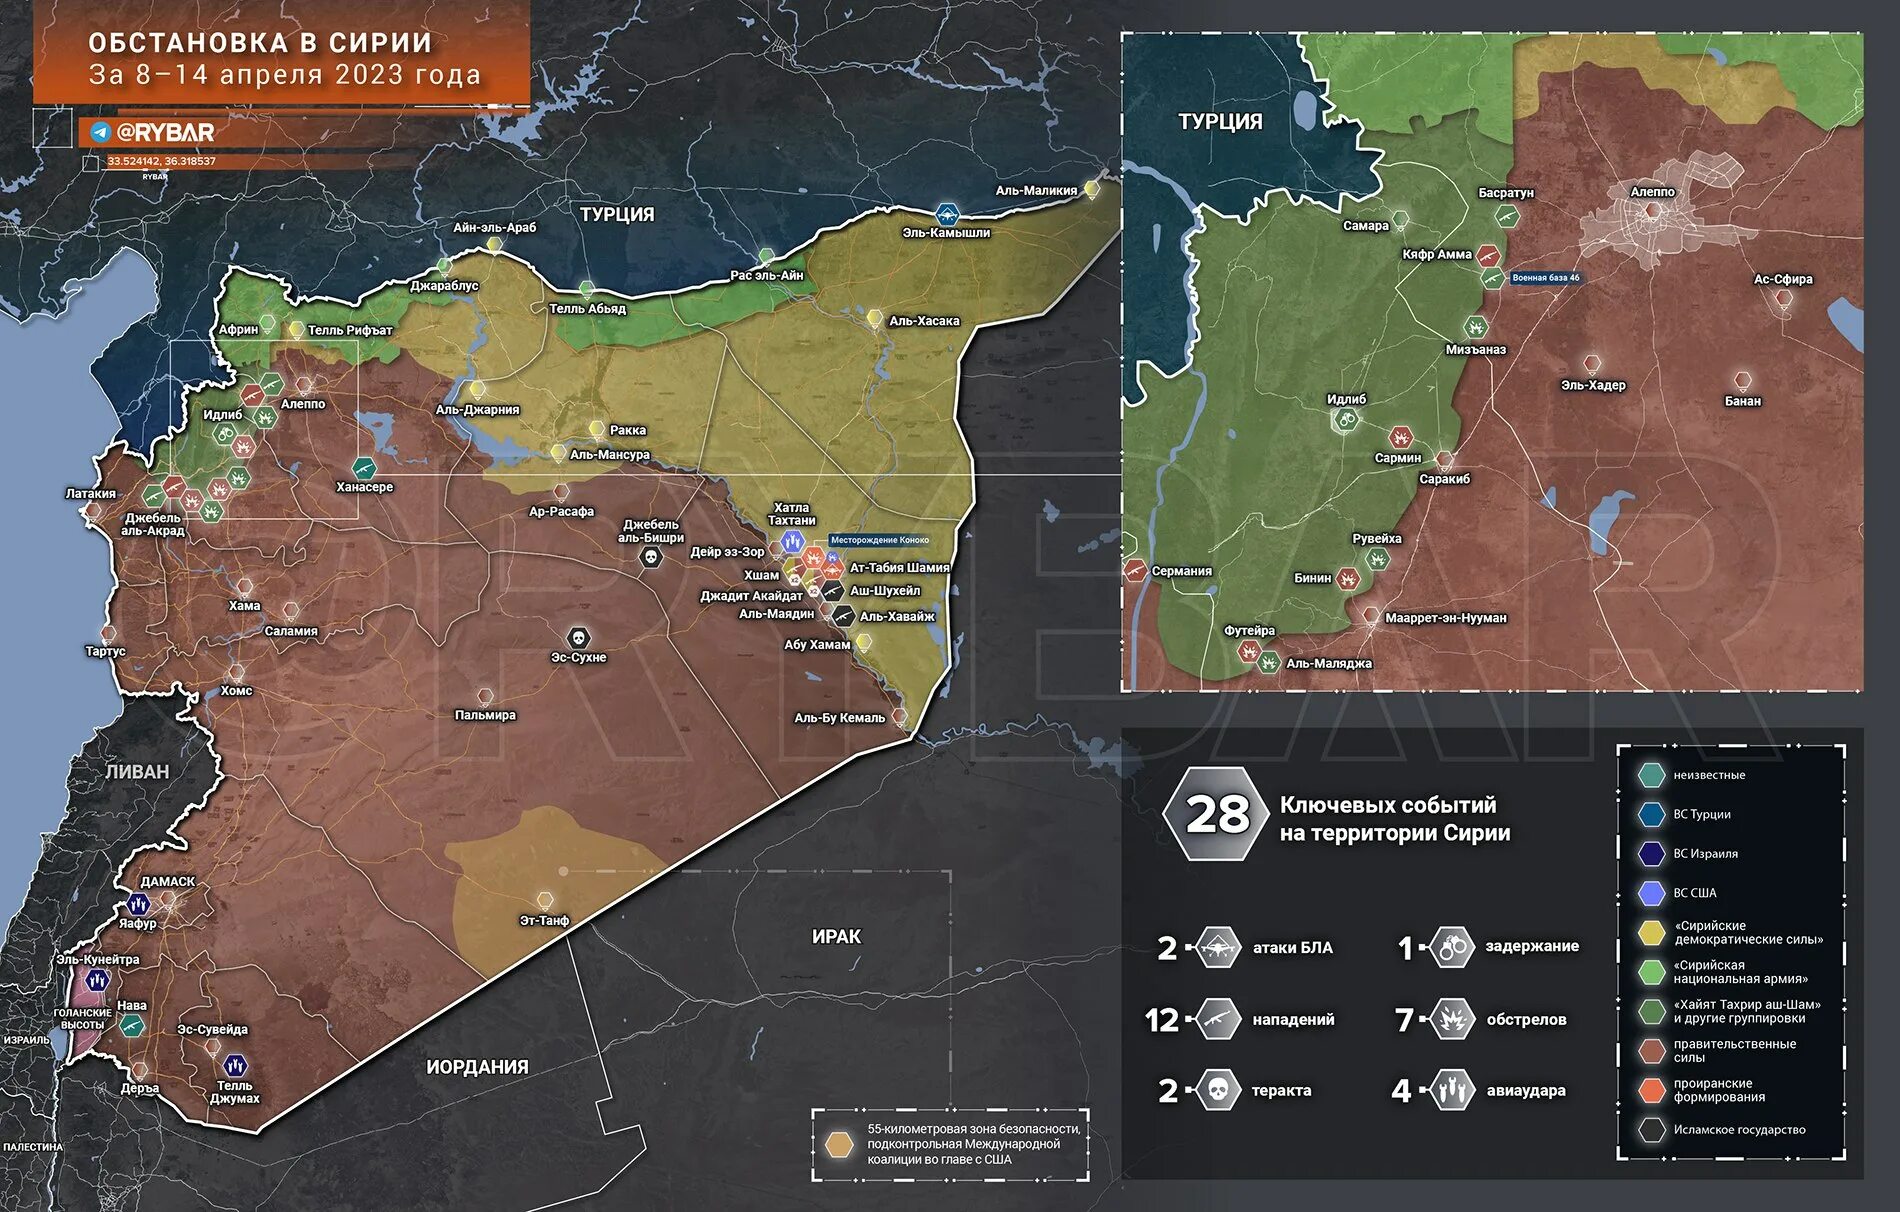 Сирия обзор боевых действий. Сирия 2023. Карта войны в Сирии 2023. Карта контроля территории Сирии 2023. Военная карта Сирии 2023.